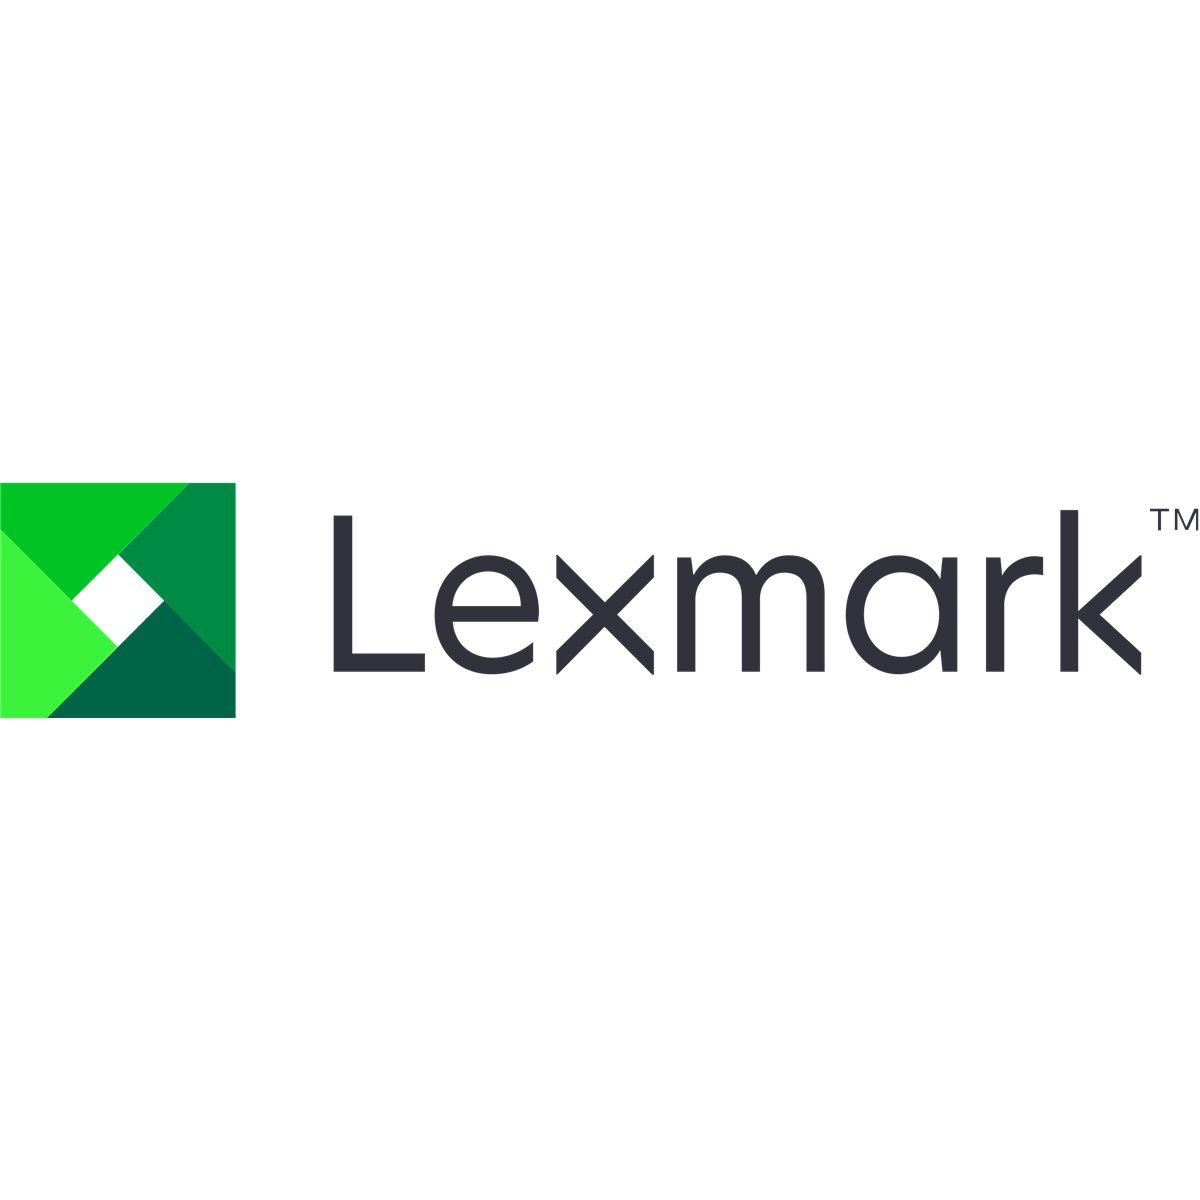 Lexmark Controller Spectre